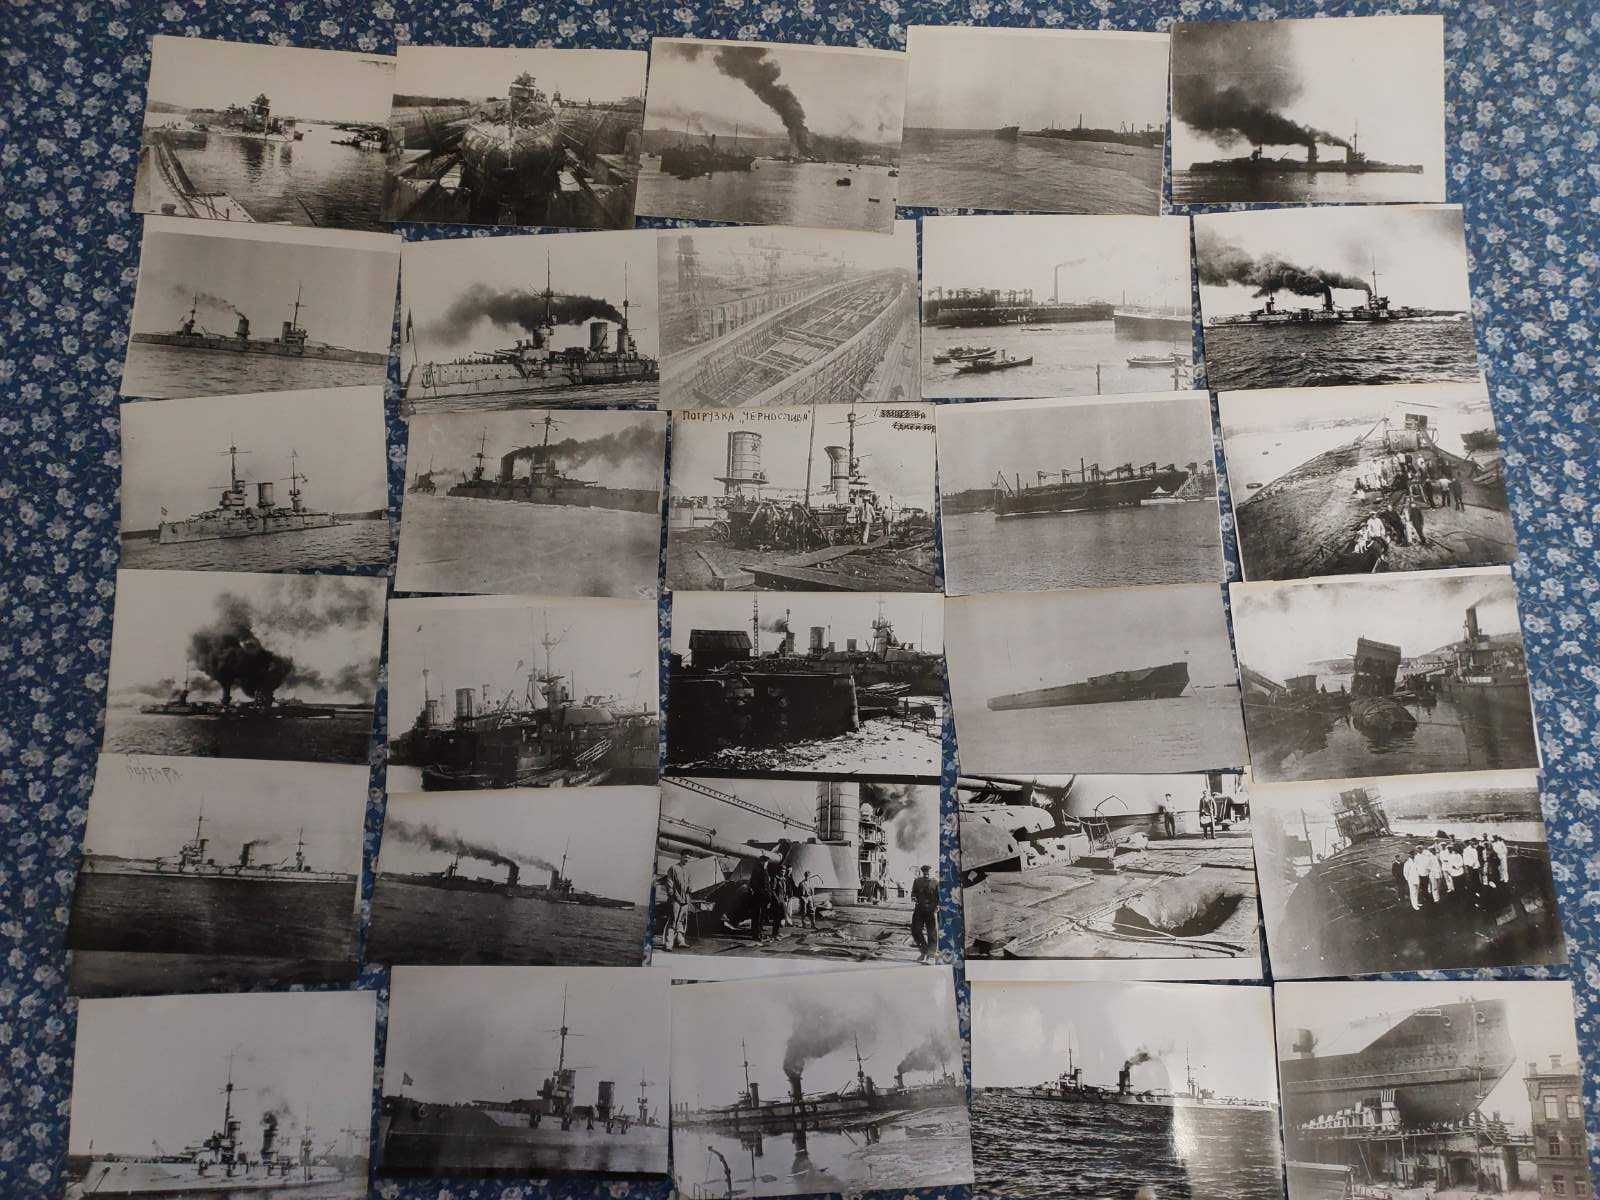 Продам фото кораблей Российского императорского флота